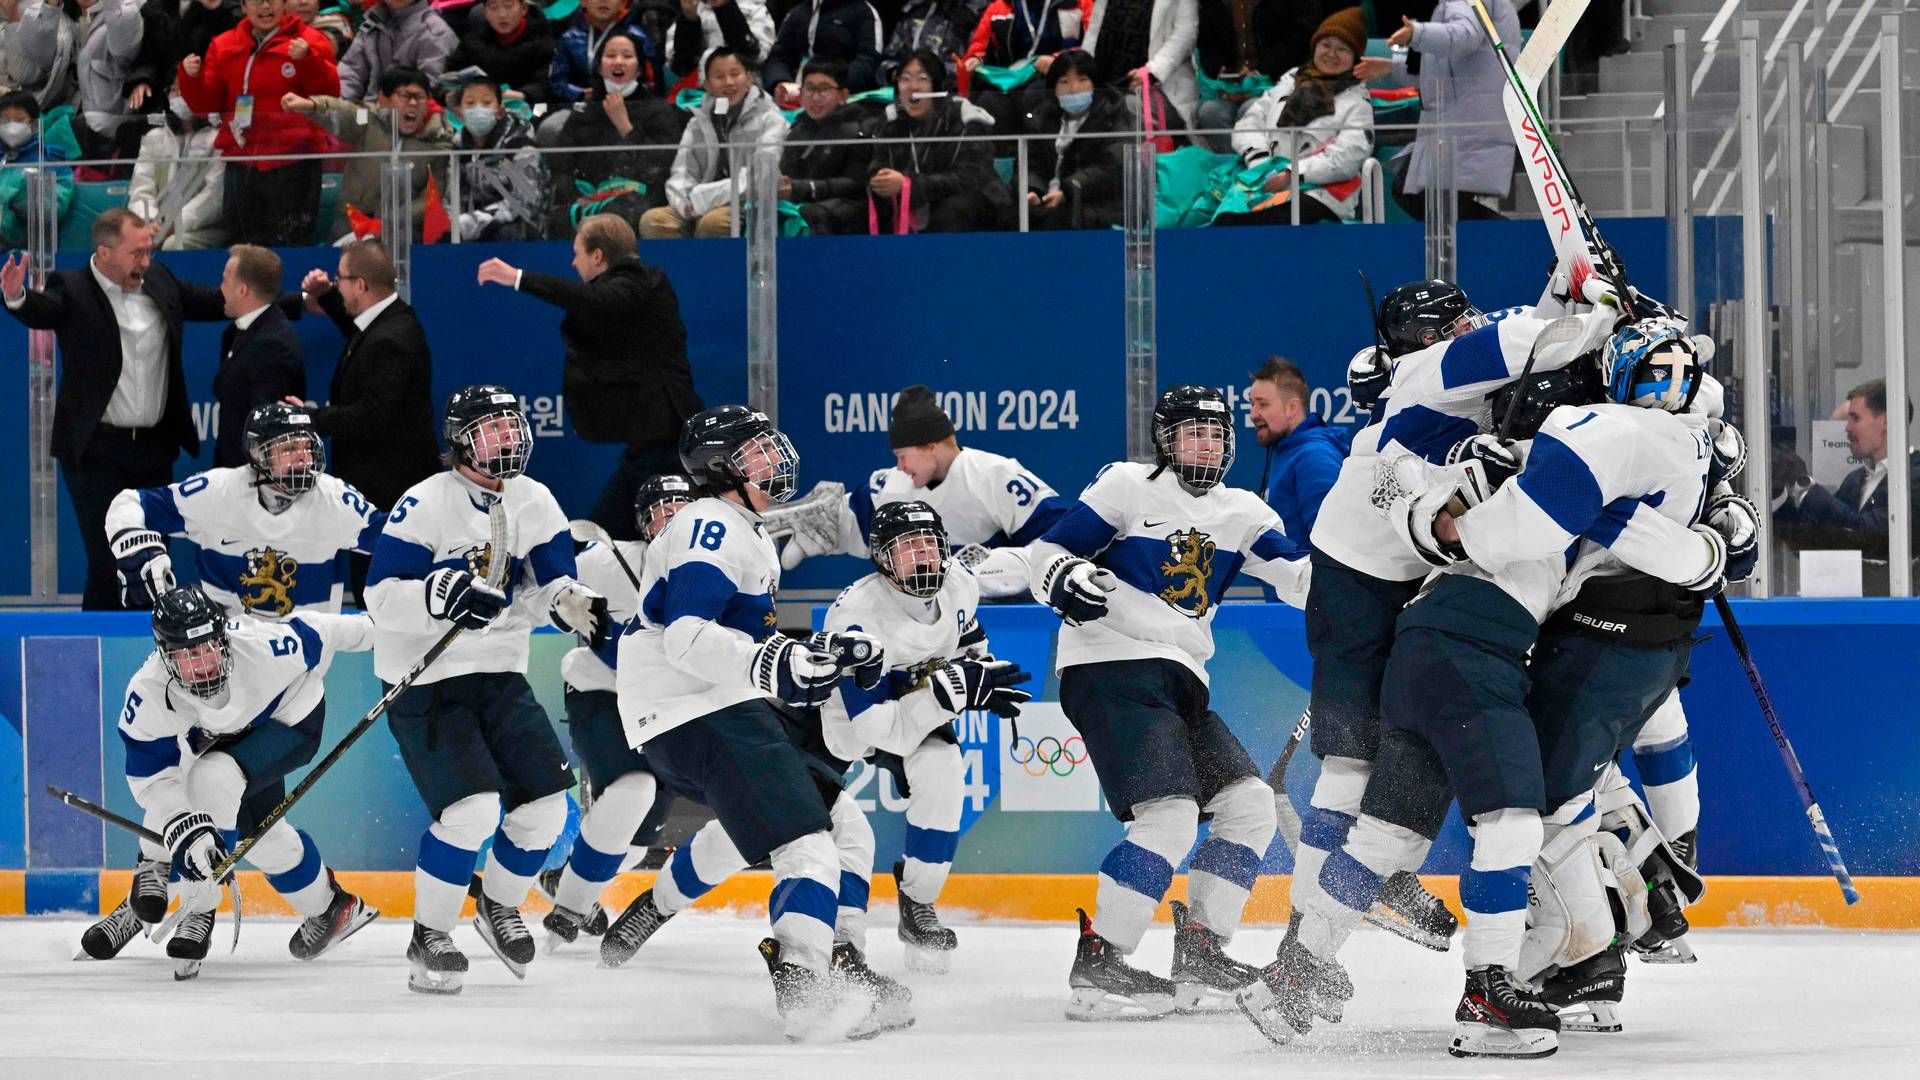 Fremover kommer Boozt til at stå som sponsor på maven af det finske herrelandshold i ishockey. | Foto: Jung Yeon-je